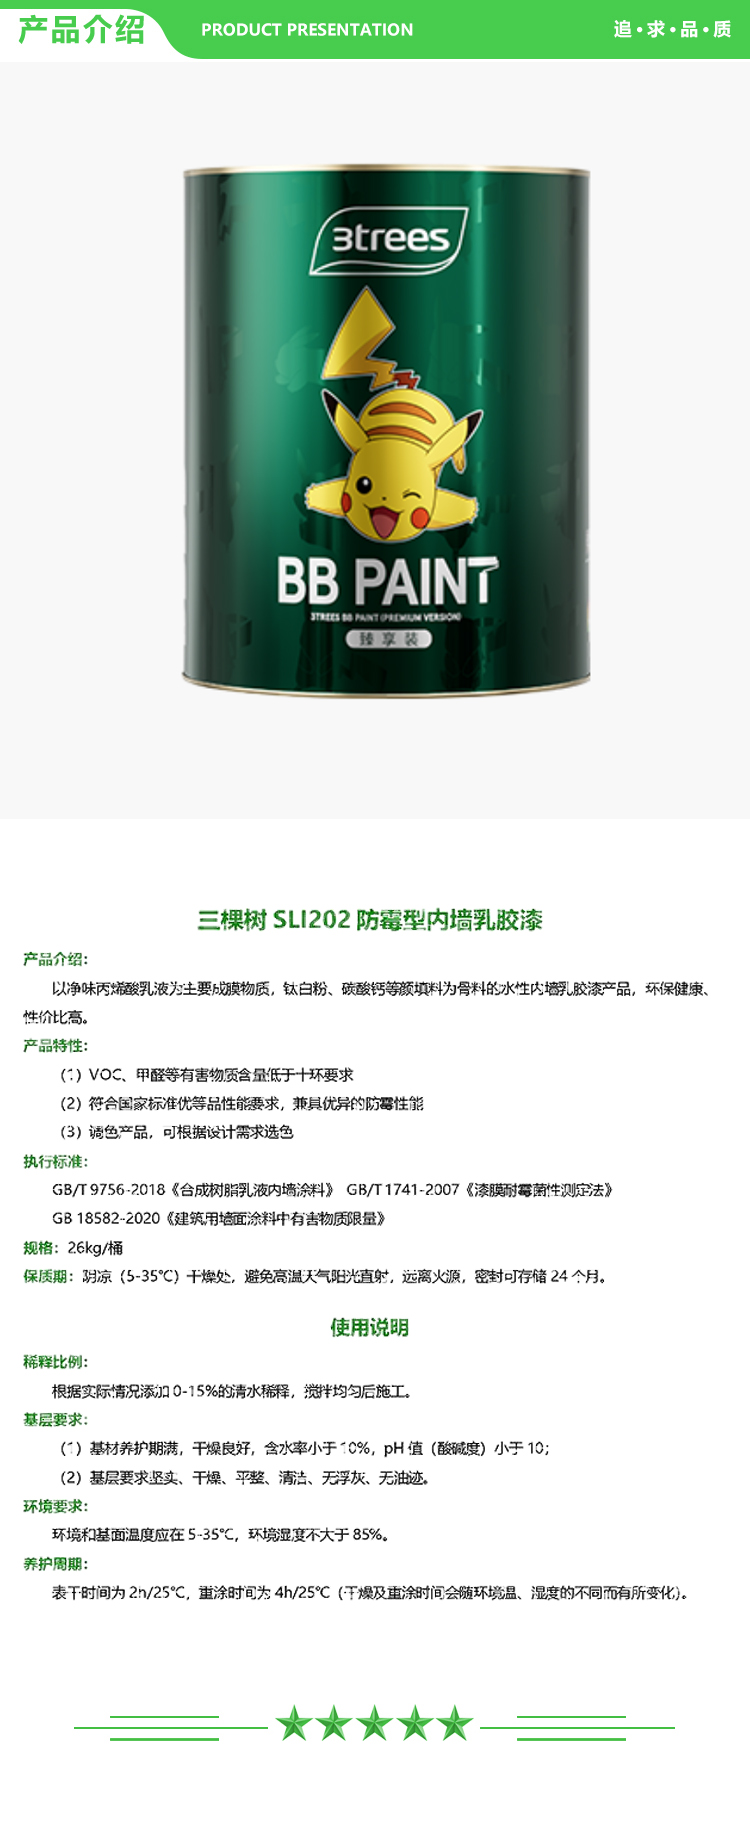 三棵树 SLI202 防霉型内墙乳胶漆 26kg-桶 可调色 普通防霉系列 2.jpg